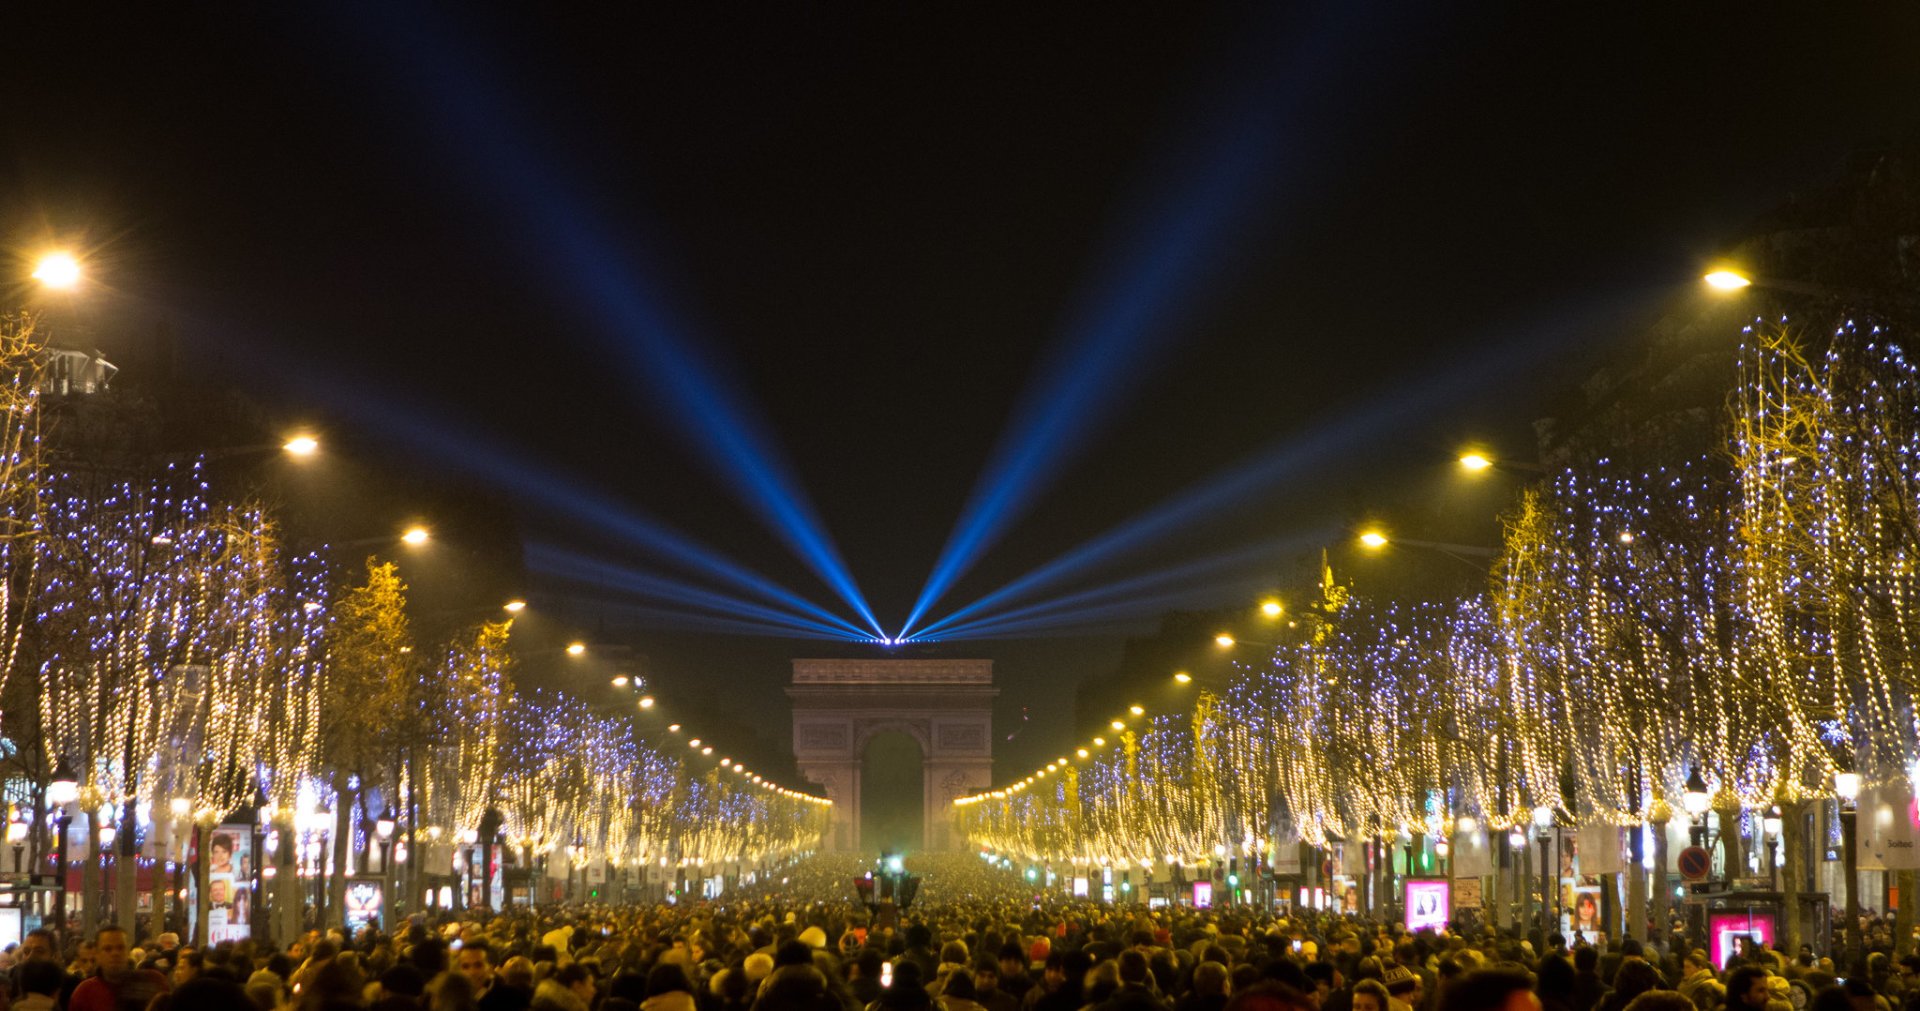 Paris New Year's Eve (La Réveillon de Saint Sylvestre) 20212022 Dates